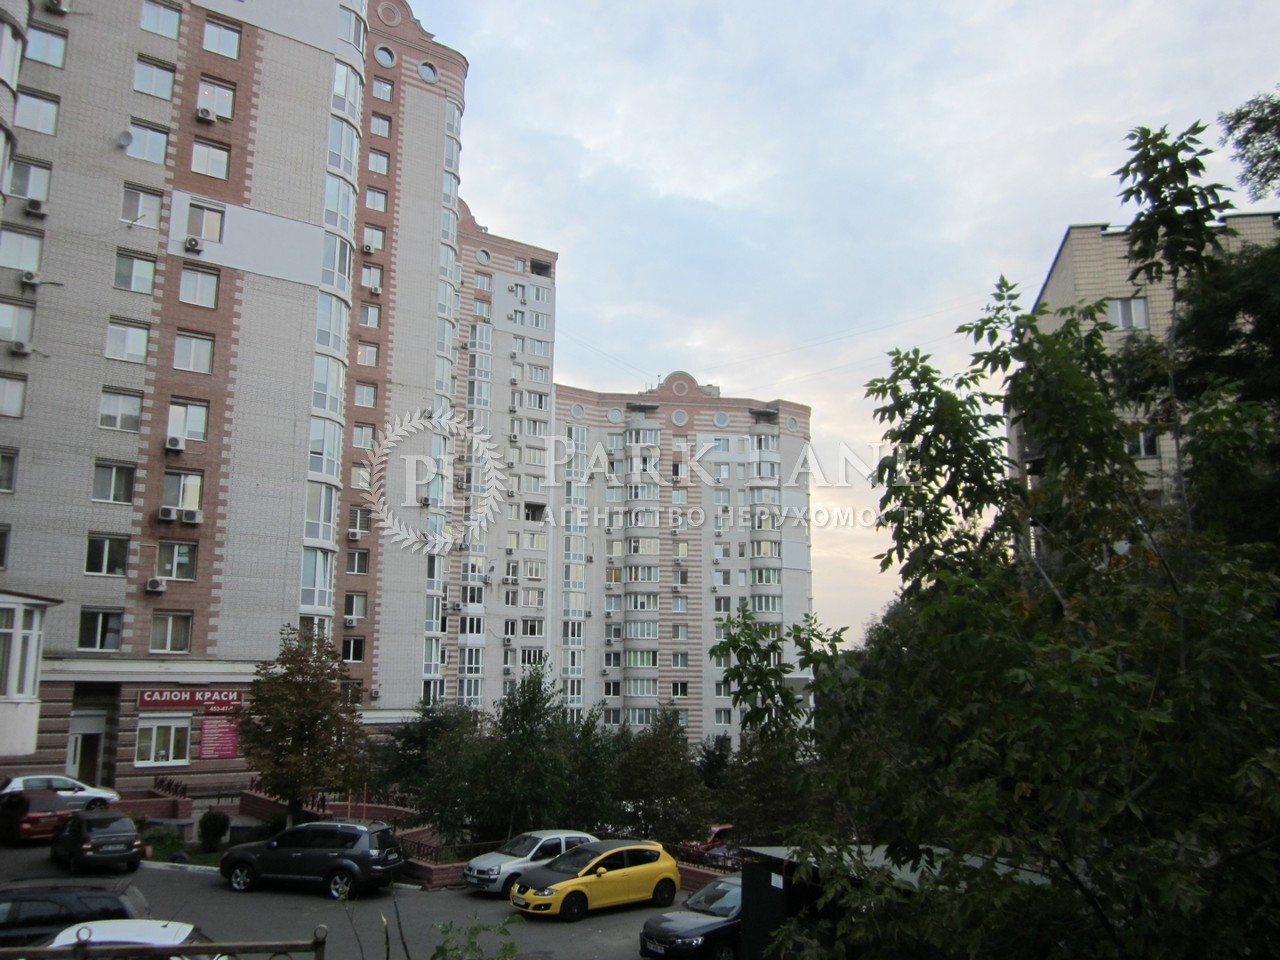  Офис, G-749082, Руданского Степана, Киев - Фото 1